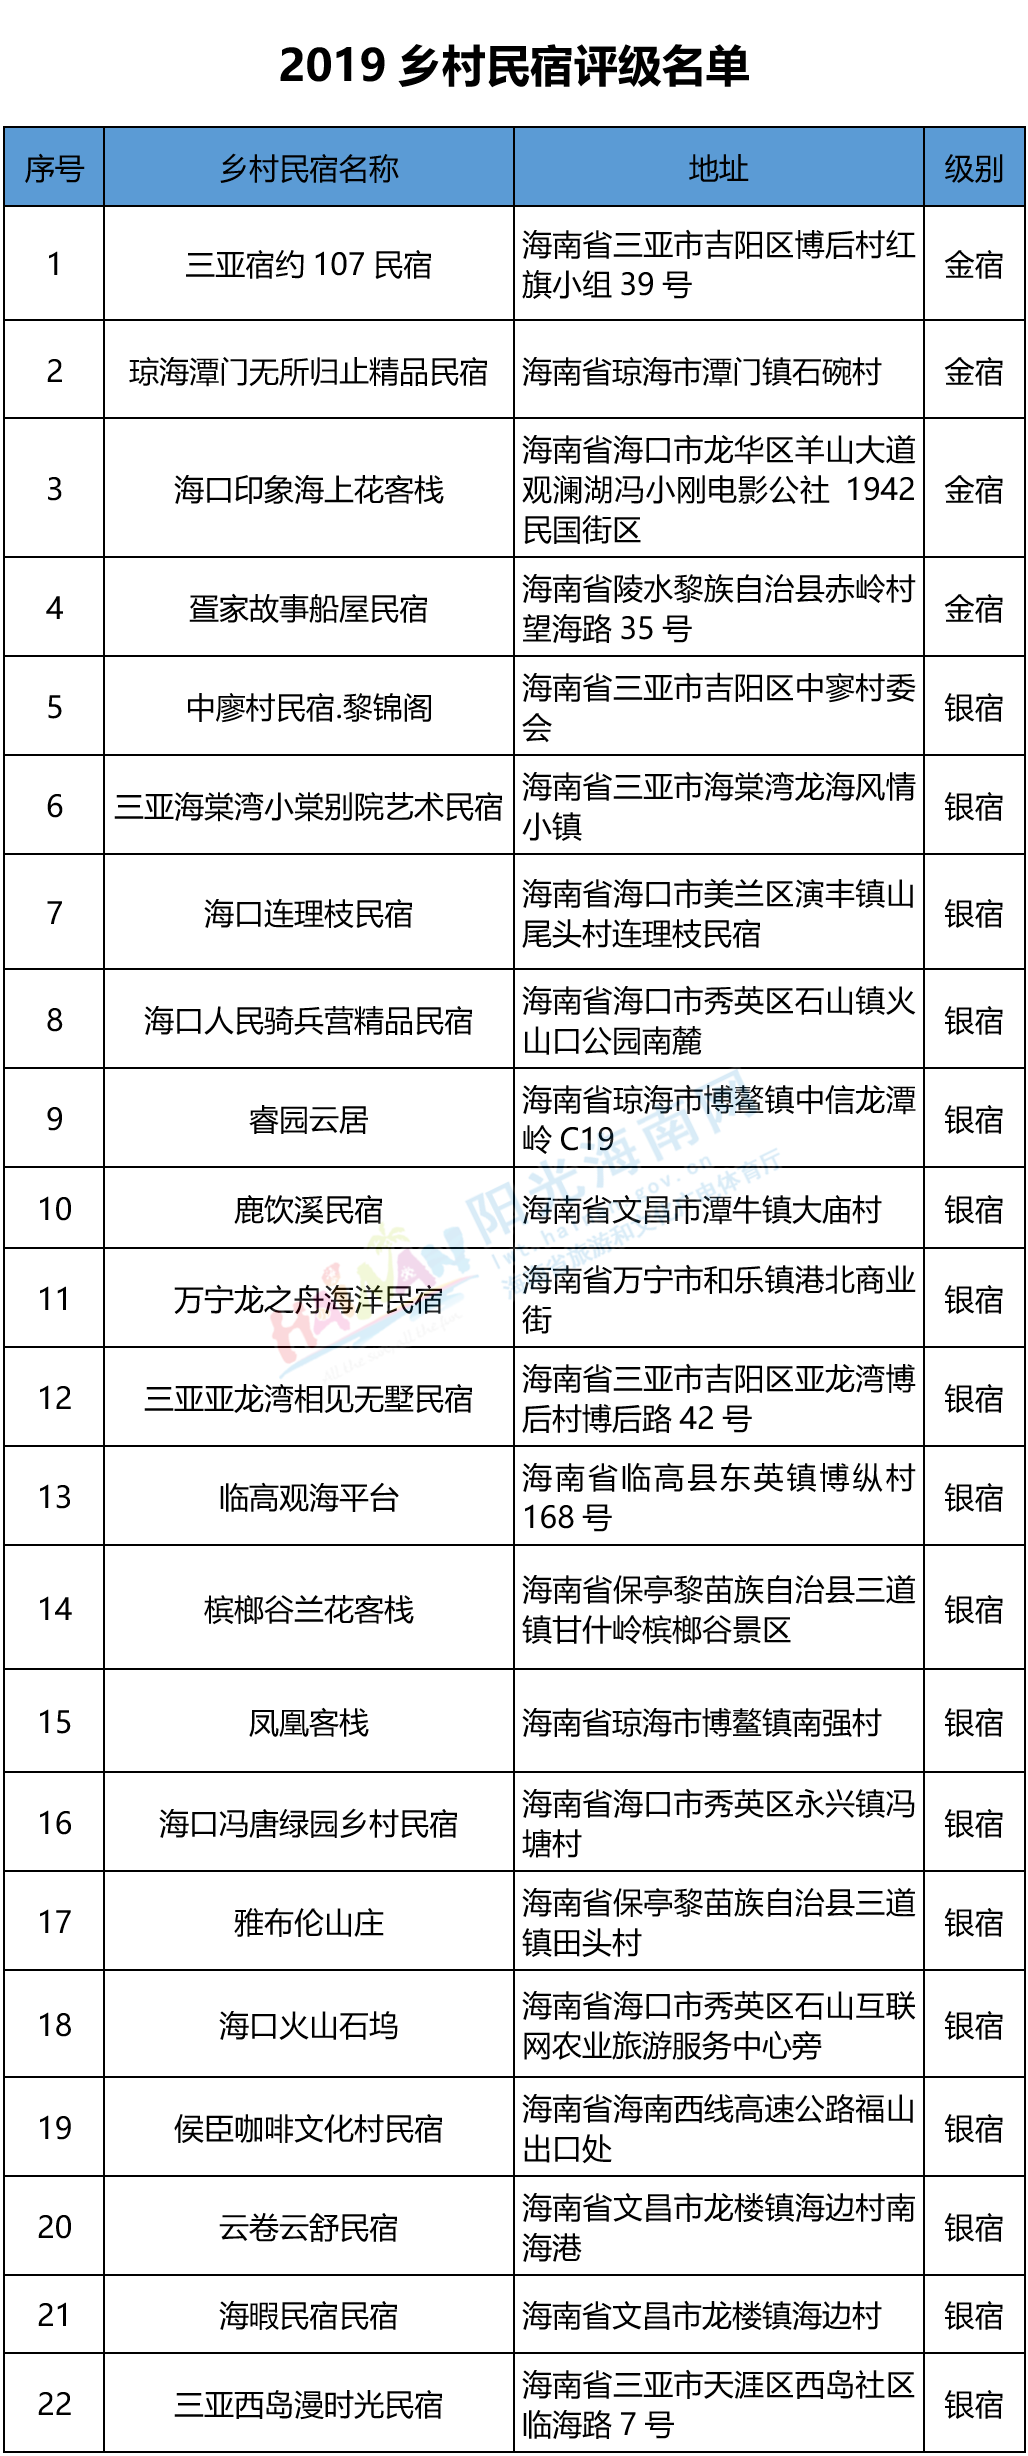 海南省2019乡村民宿评级名单.png